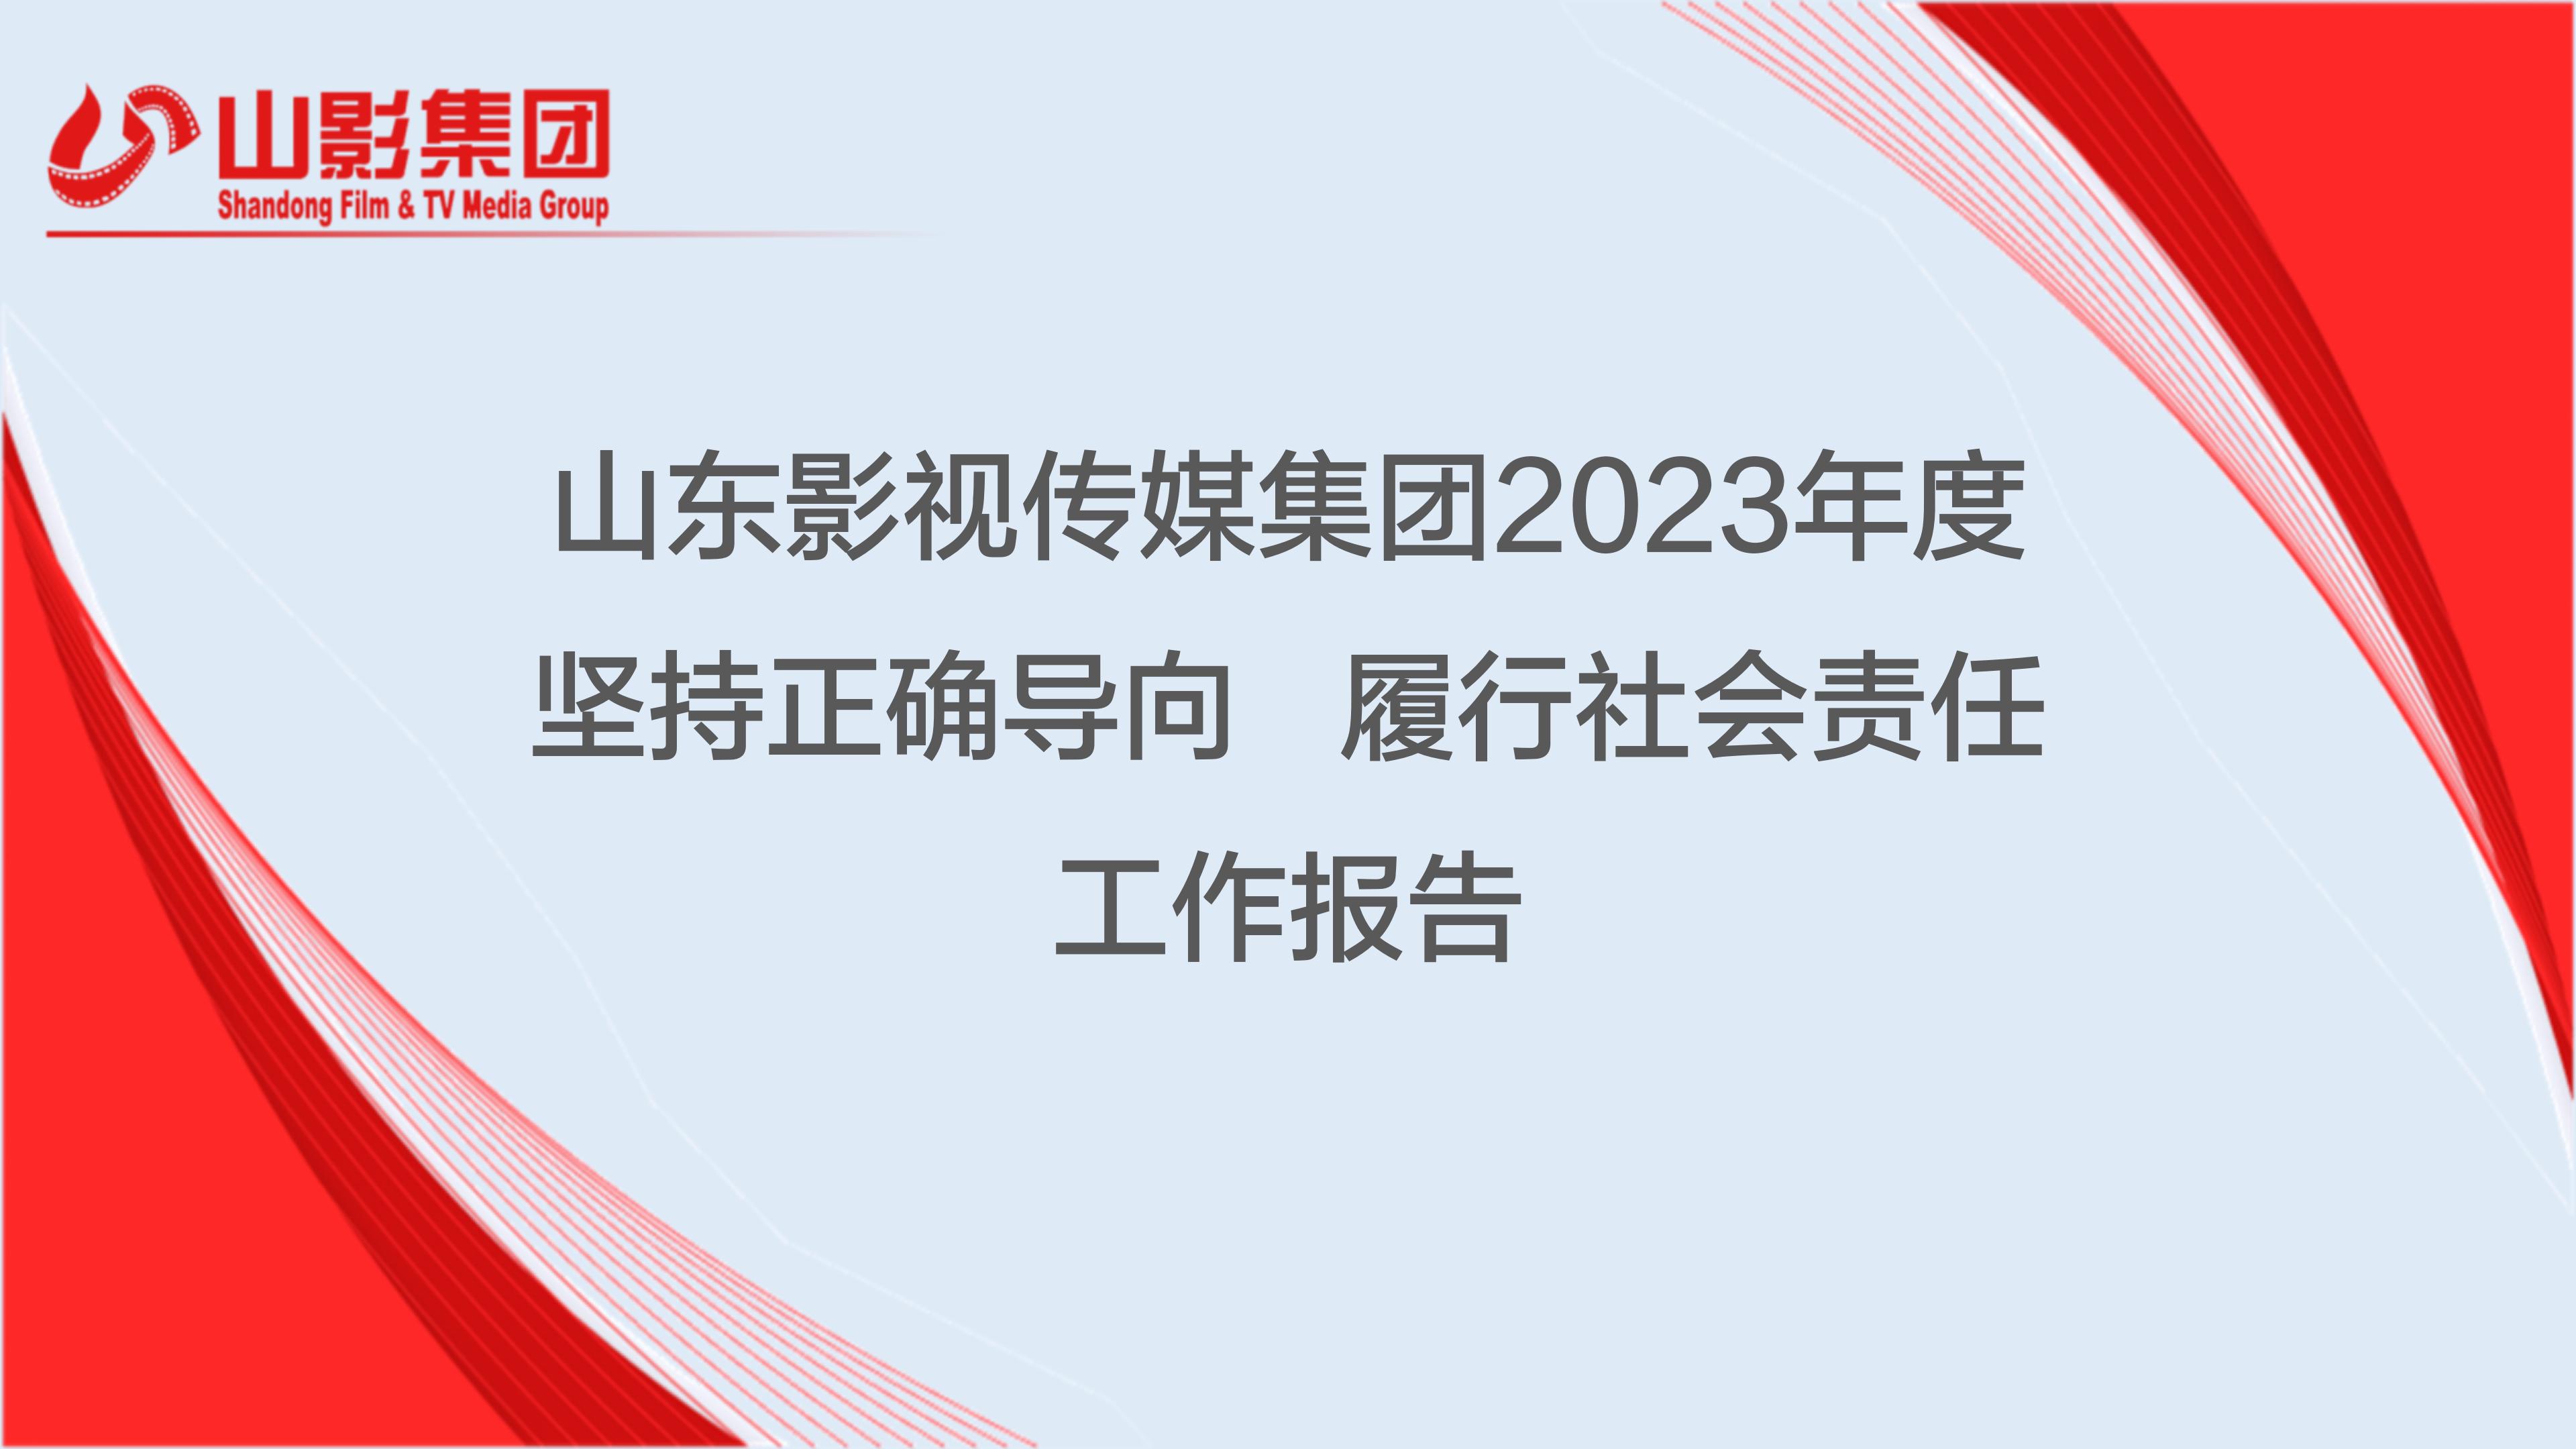 山东影视传媒集团有限公司2023年度社会责任报告